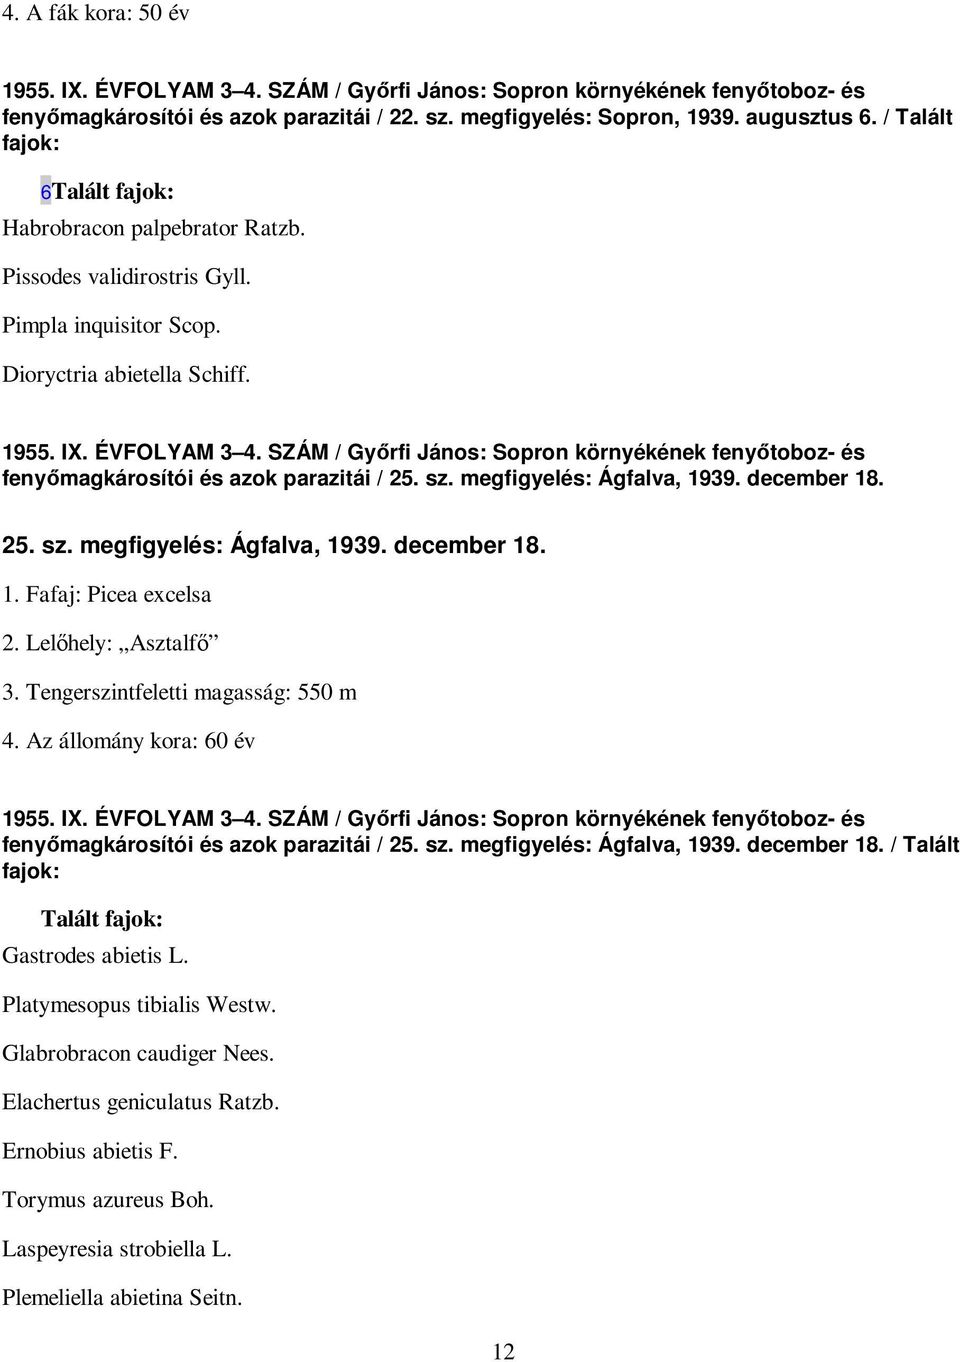 SZÁM / Gyırfi János: Sopron környékének fenyıtoboz- és fenyımagkárosítói és azok parazitái / 25. sz. megfigyelés: Ágfalva, 1939. december 18. 25. sz. megfigyelés: Ágfalva, 1939. december 18. 1. Fafaj: Picea excelsa 2.